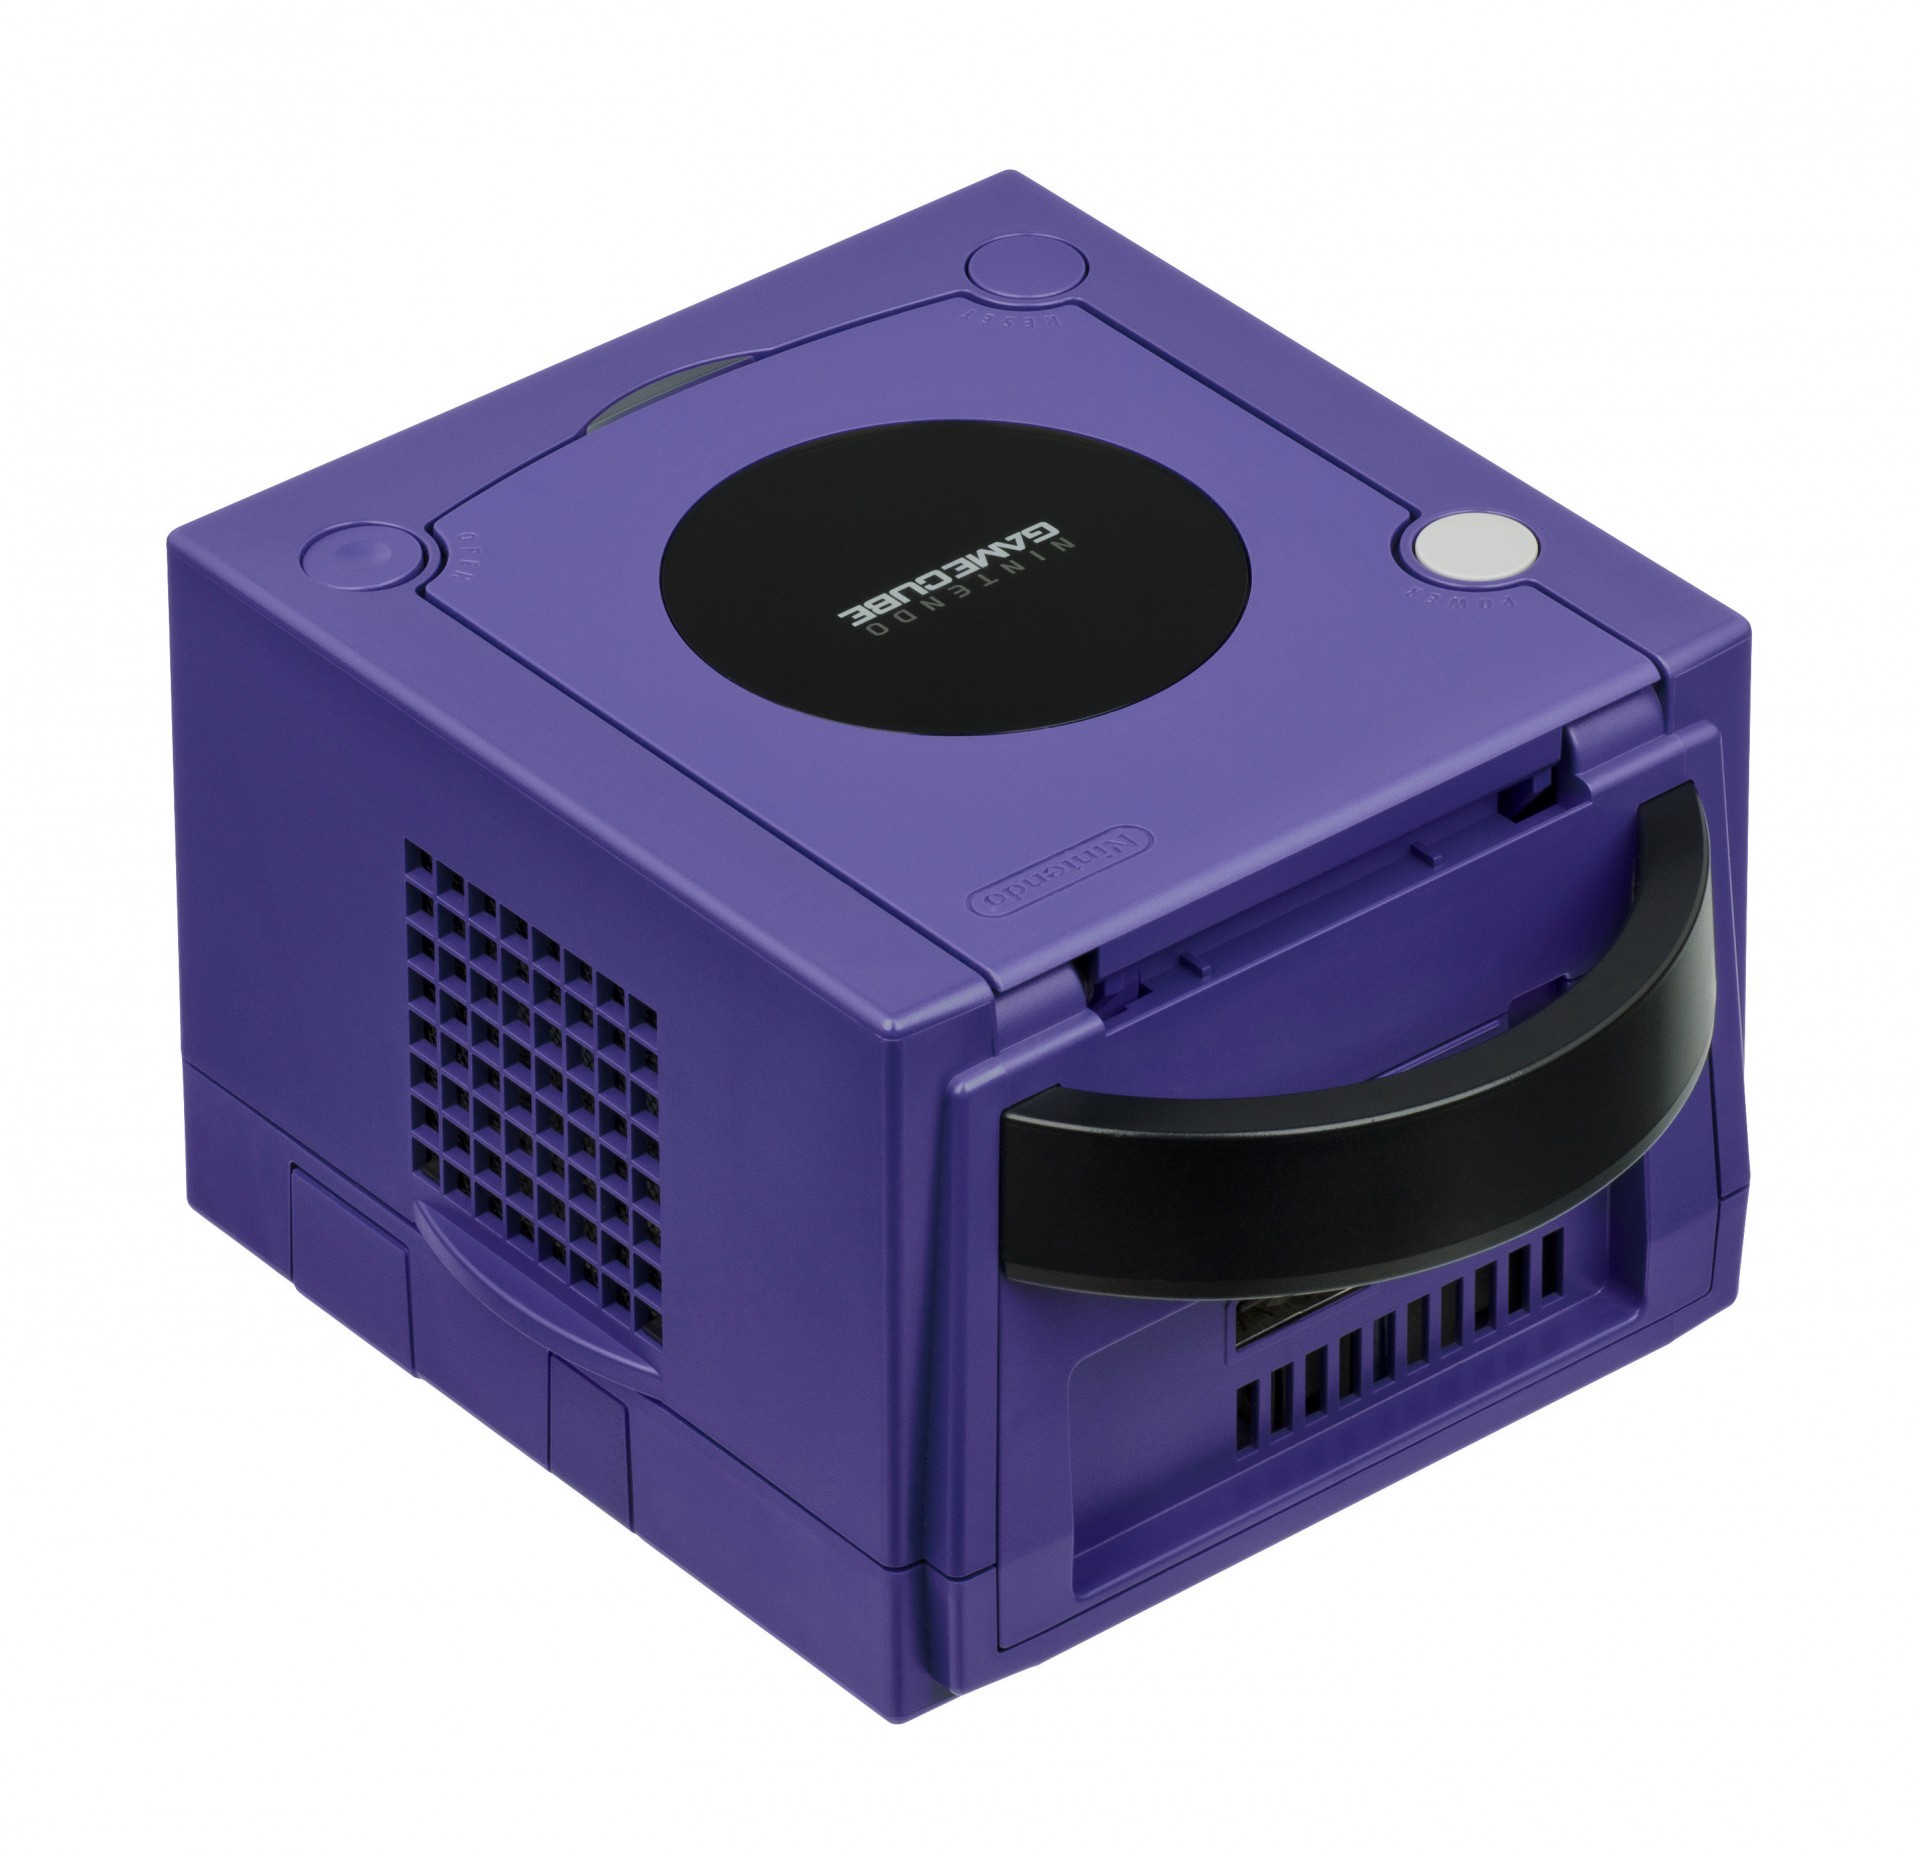 Nintendo GameCube 主機迎接誕生 20 周年紀念 承先啟後的獨特遊戲方塊